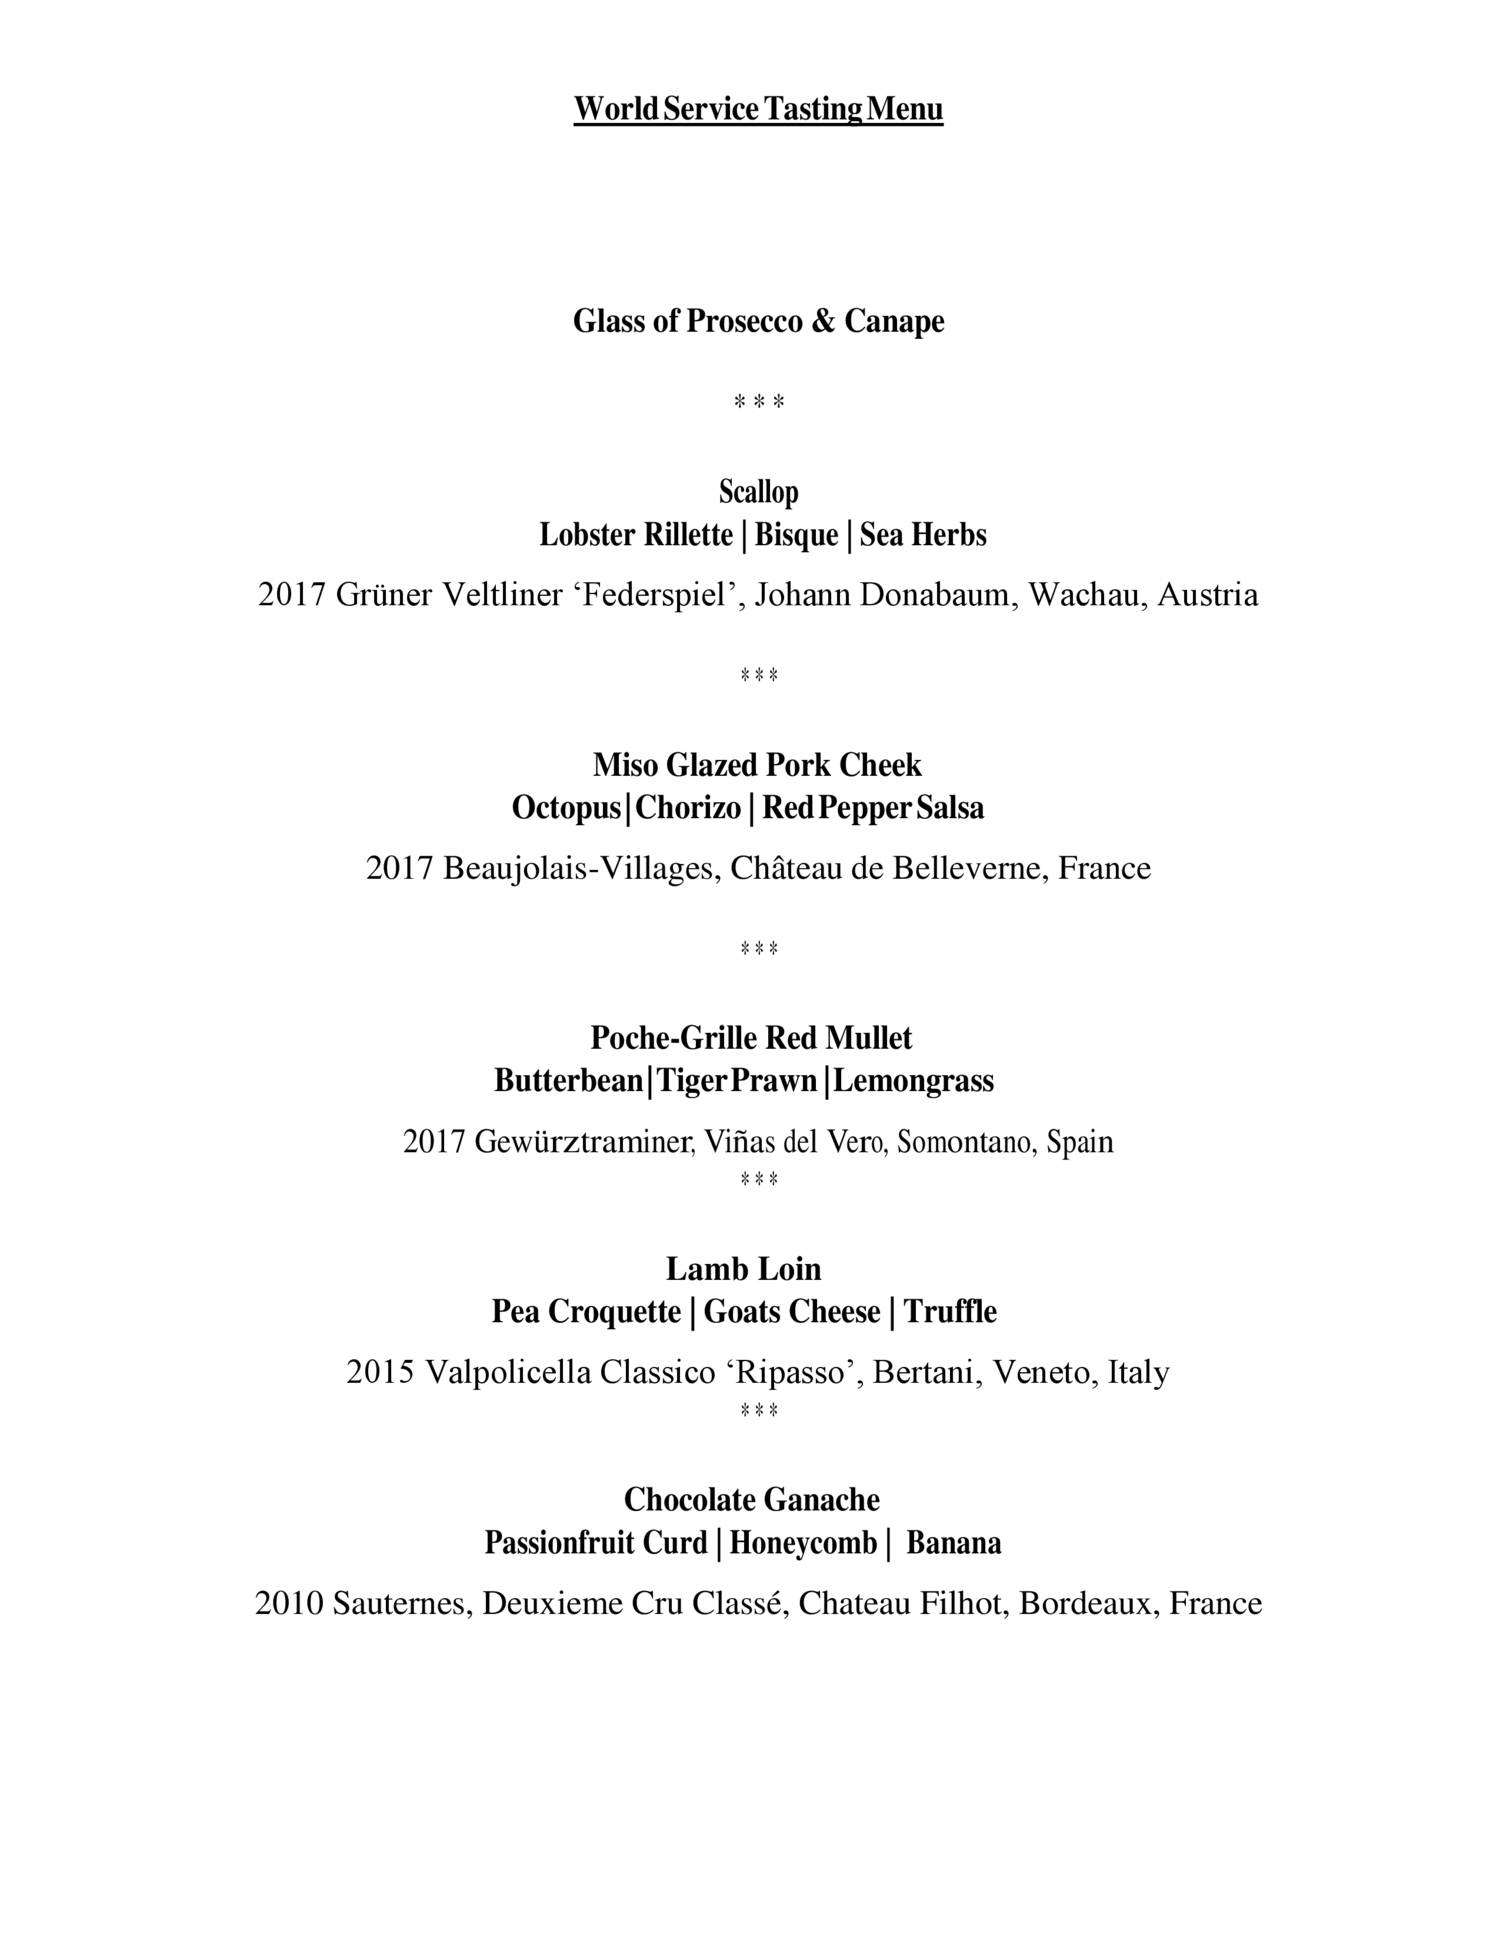 tasting-menu-with-wine-pairings-pdf-docdroid